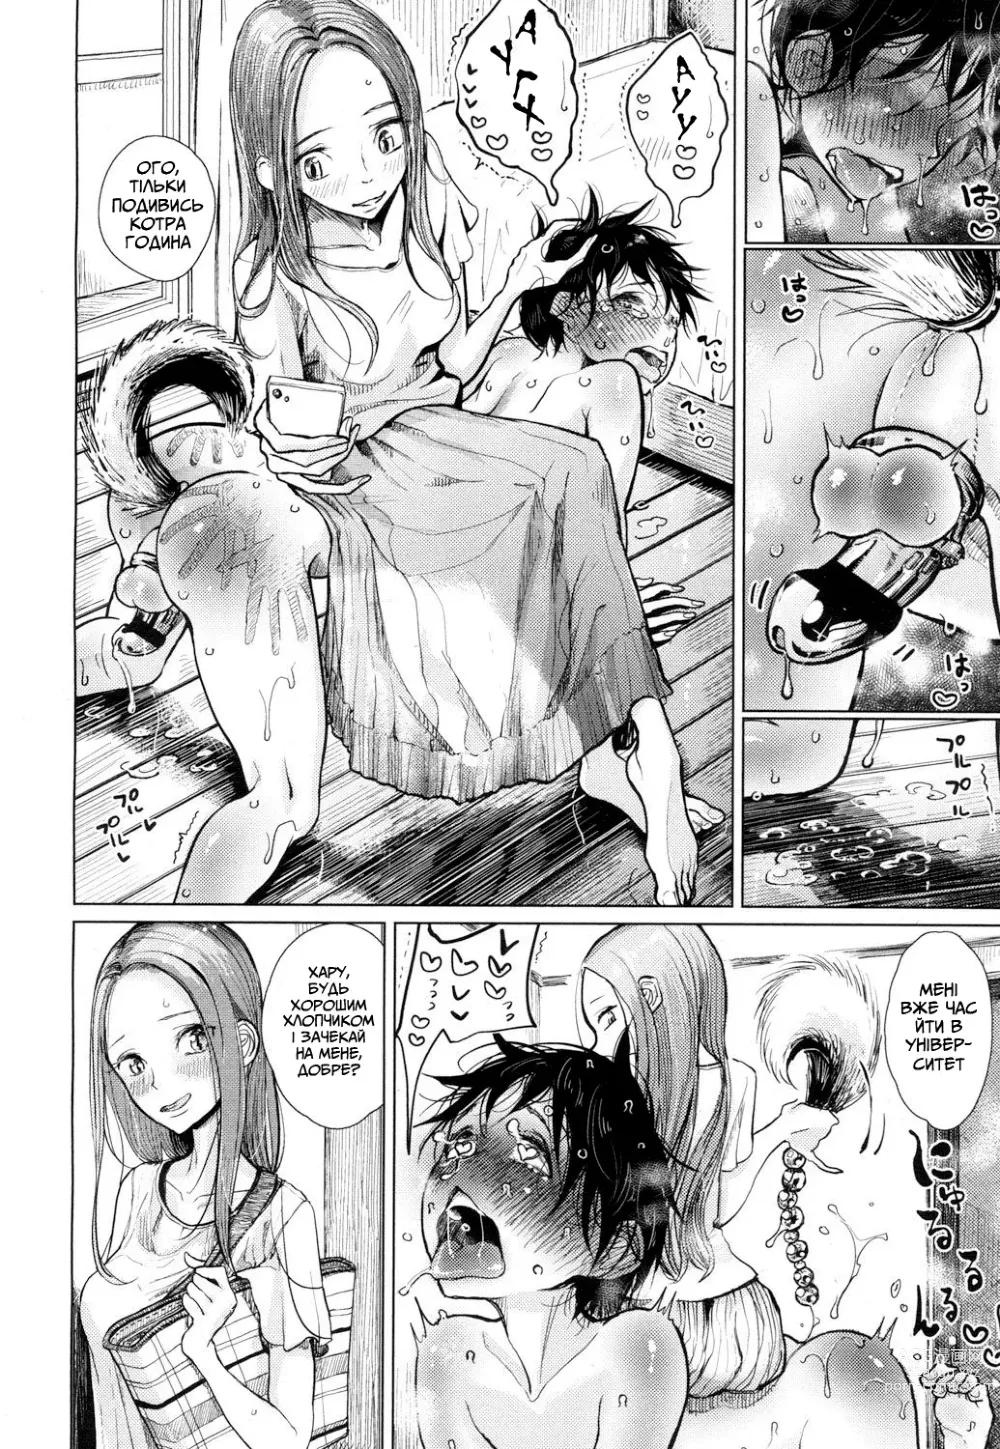 Page 18 of manga День, коли це почалося